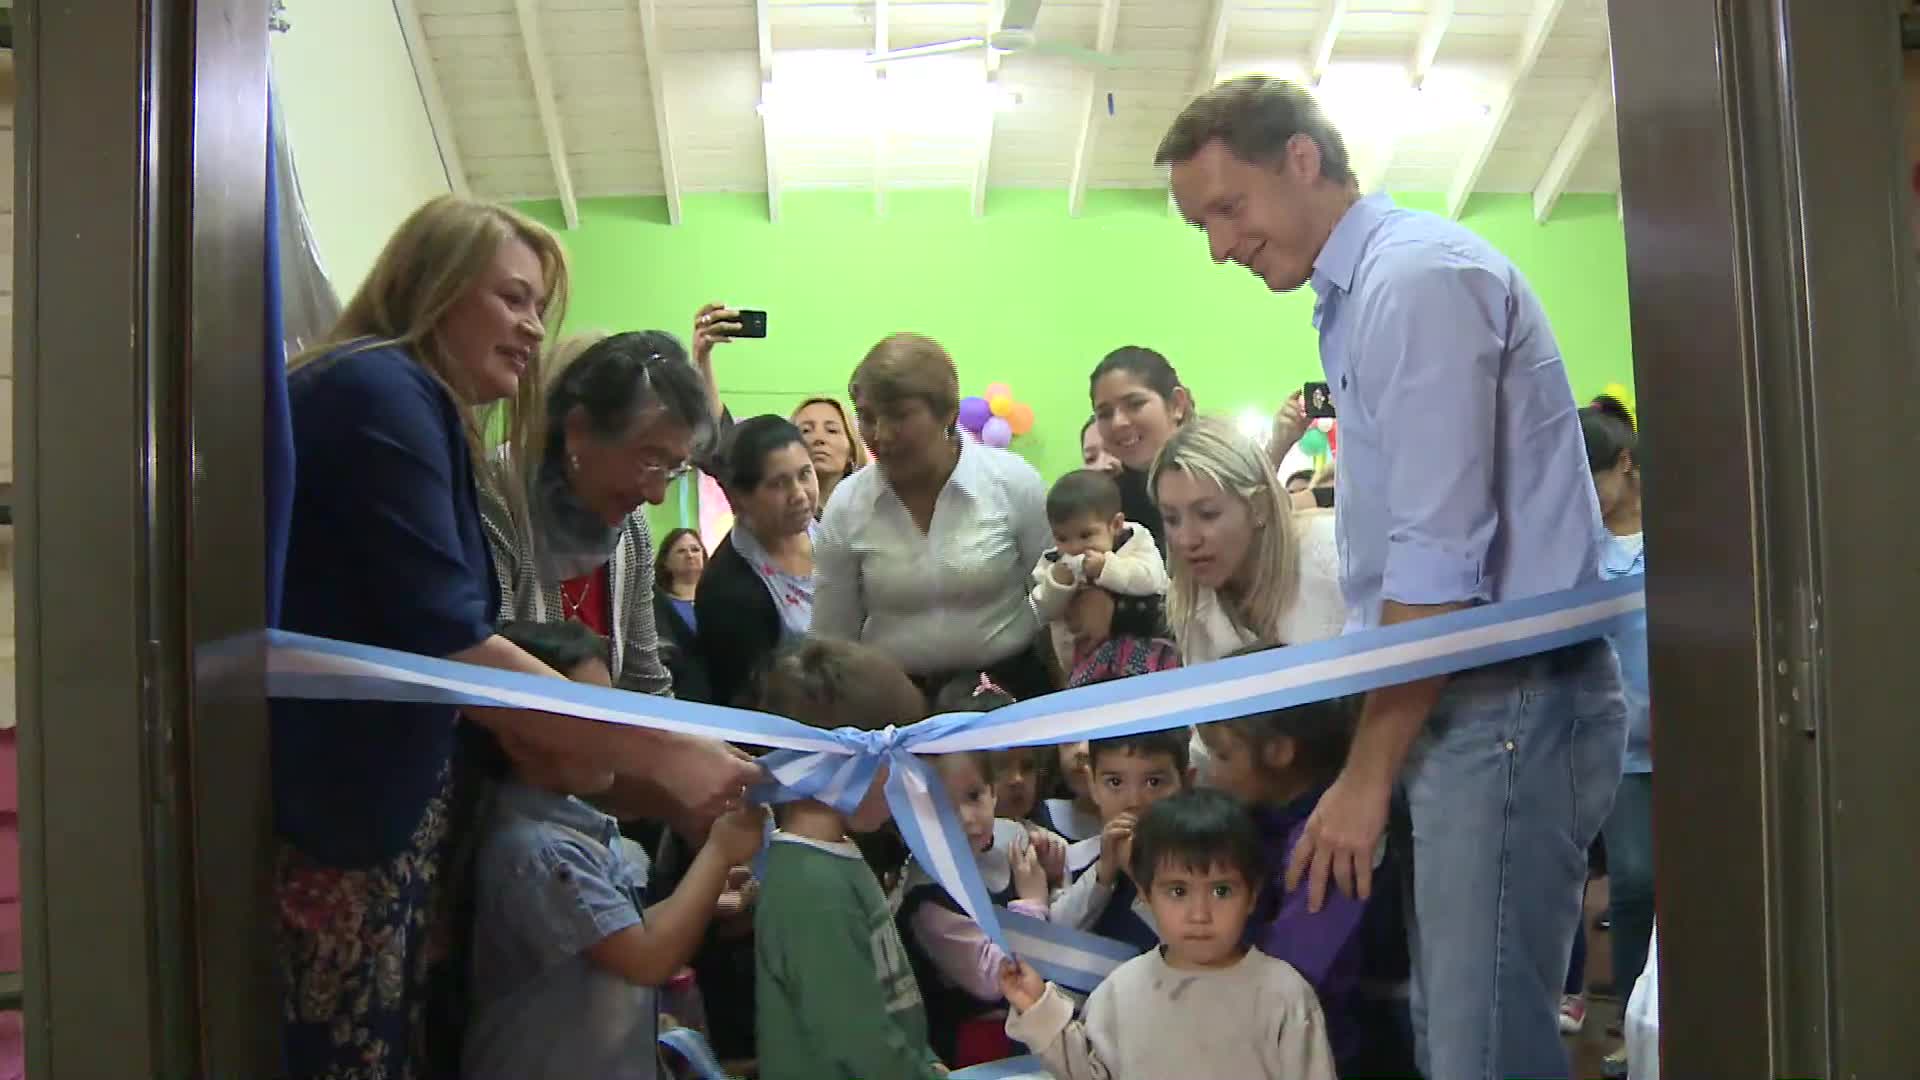 Se inauguró nueva sala en el espacio de primera infancia “Semillitas” de Villa Cabello